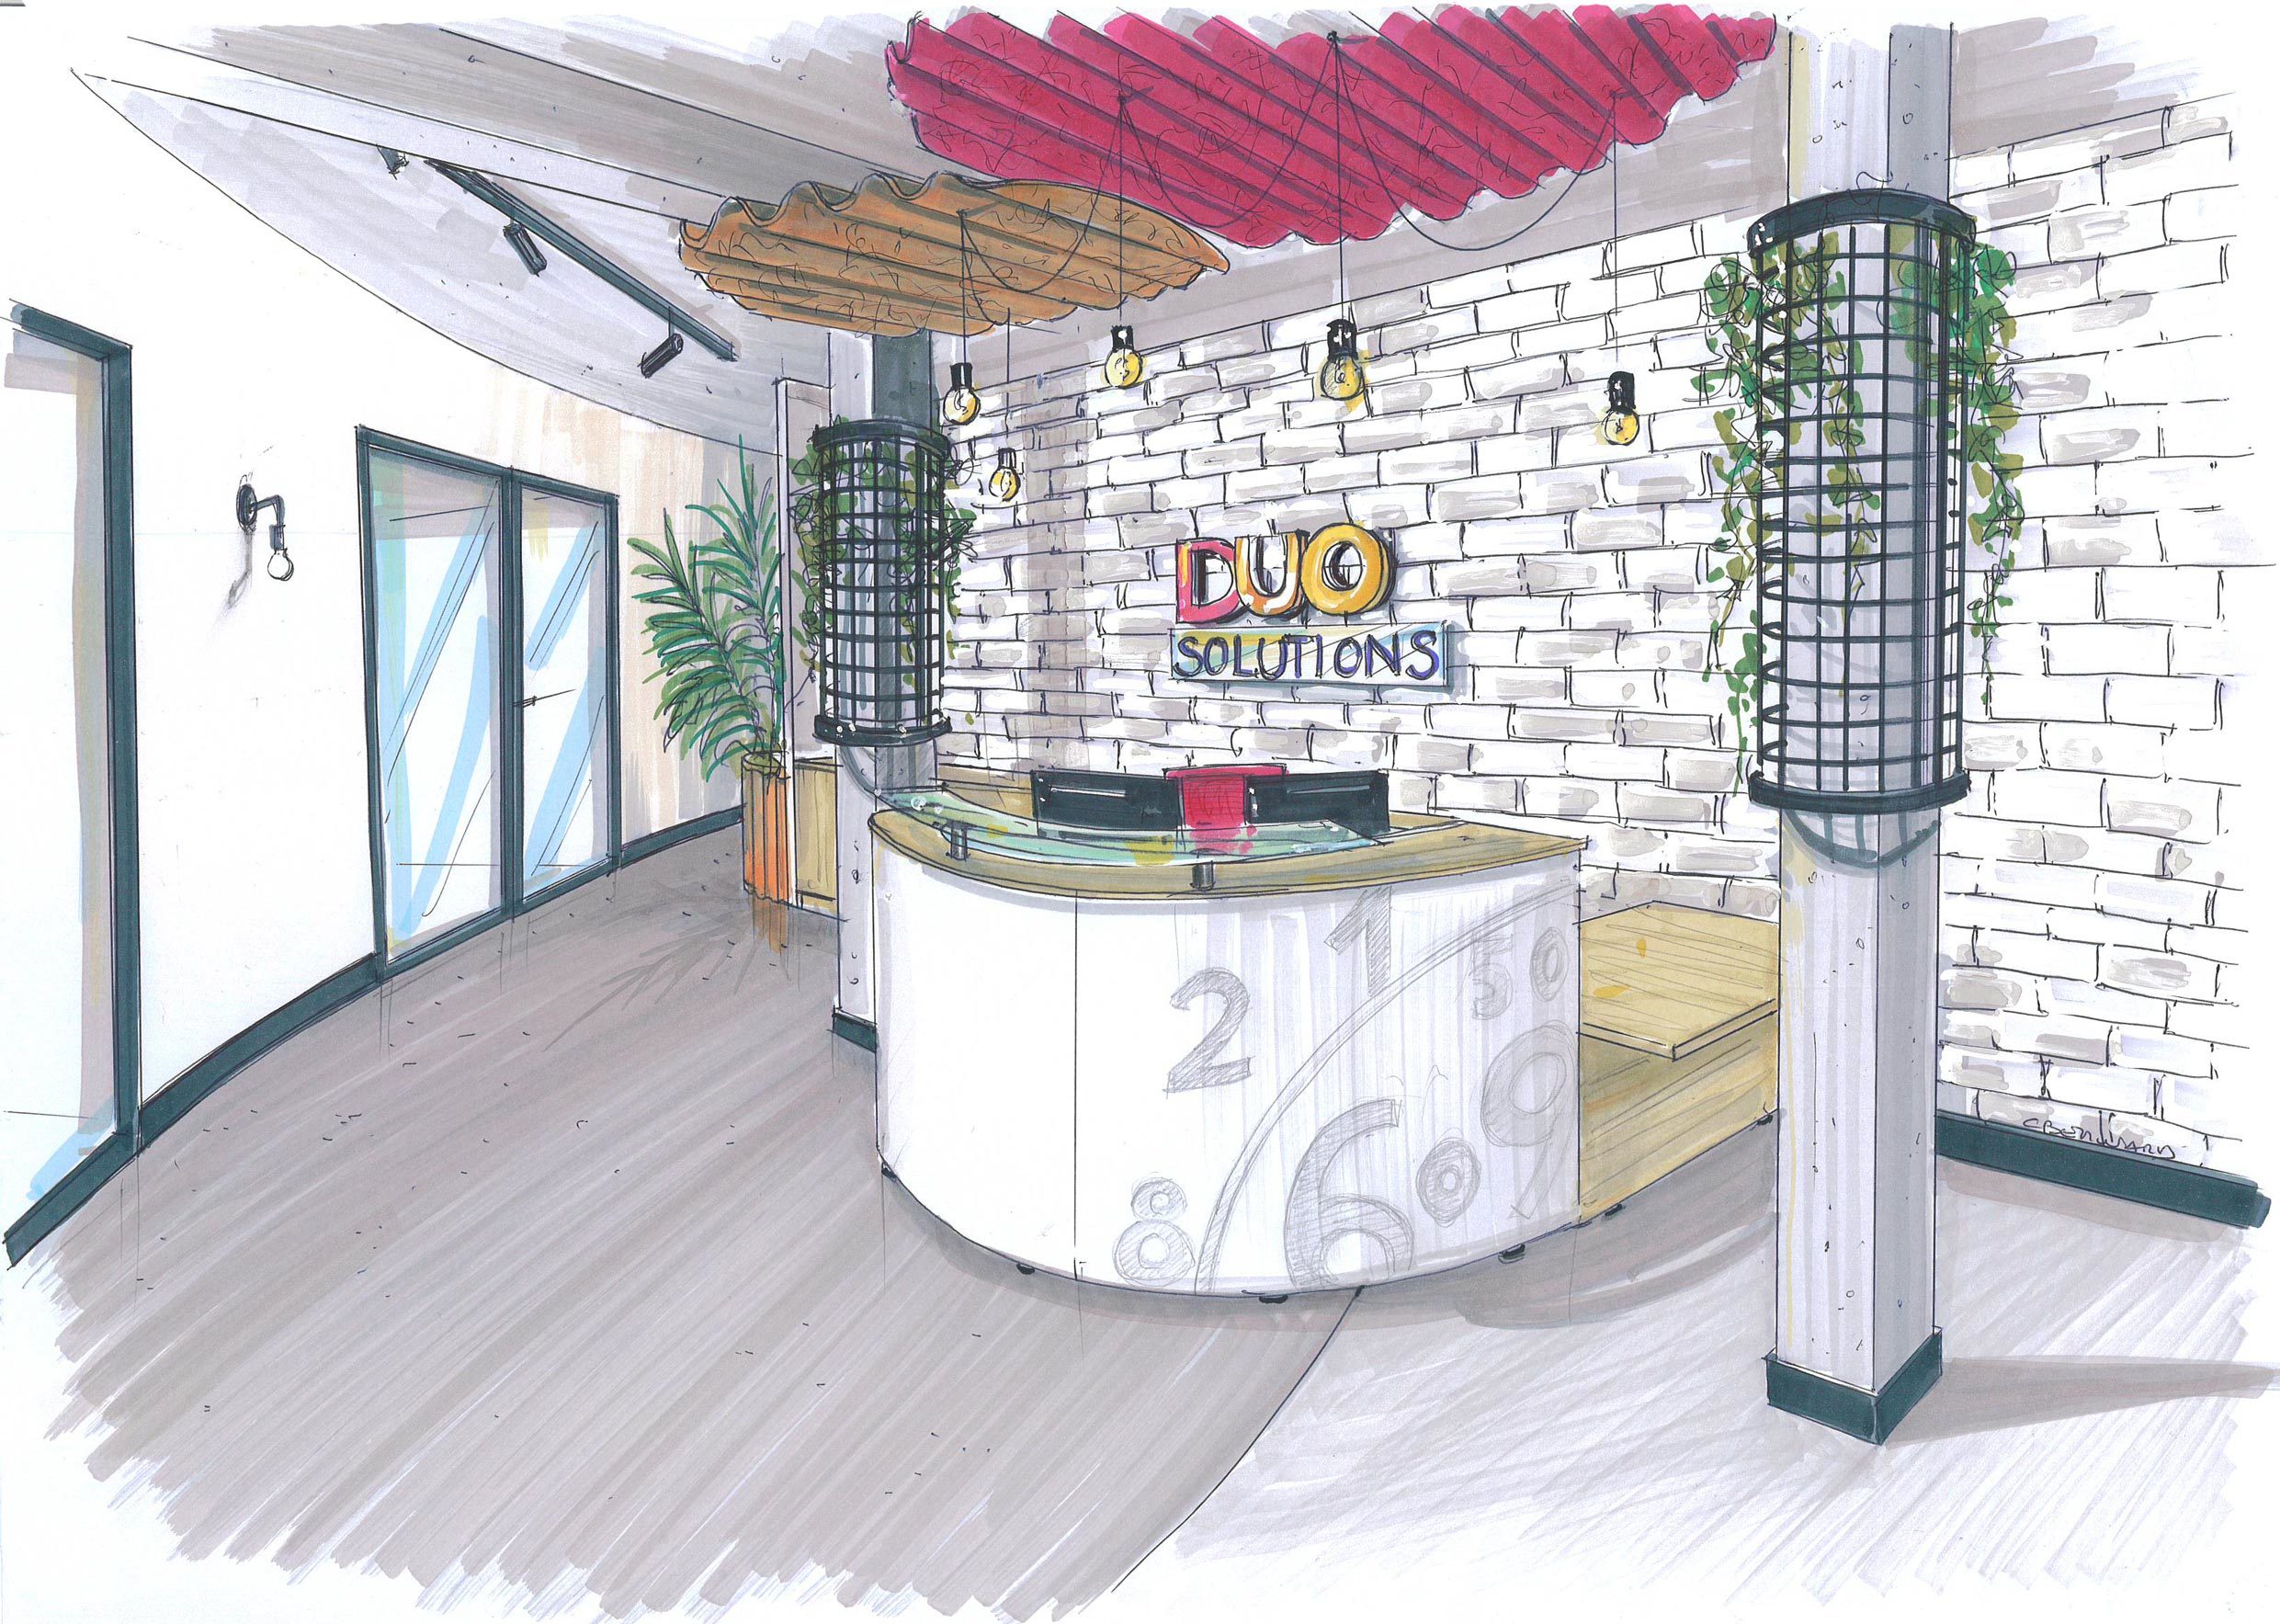 Perspective de l'accueil des bureaux de l'entreprise Duo solutions pour la décoration intérieure